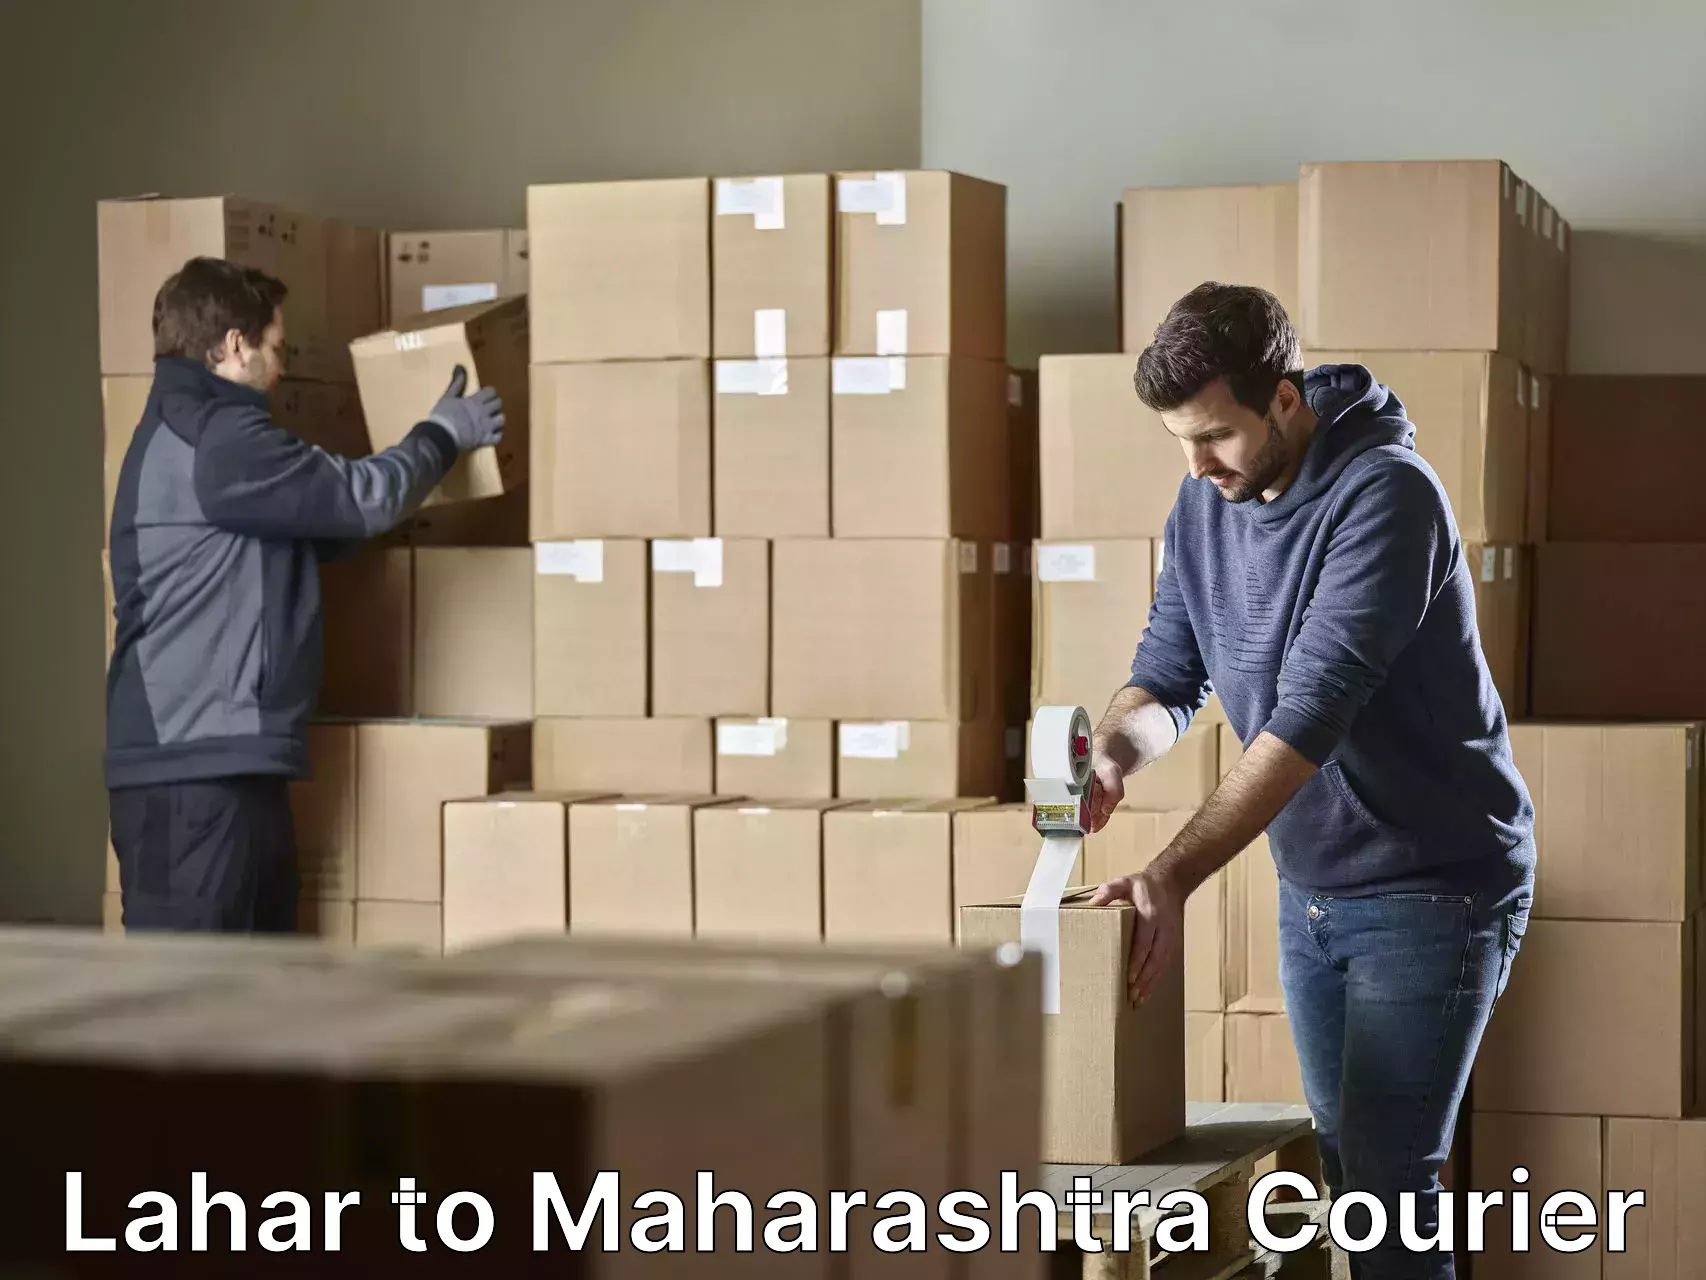 Furniture transport service Lahar to Maharashtra